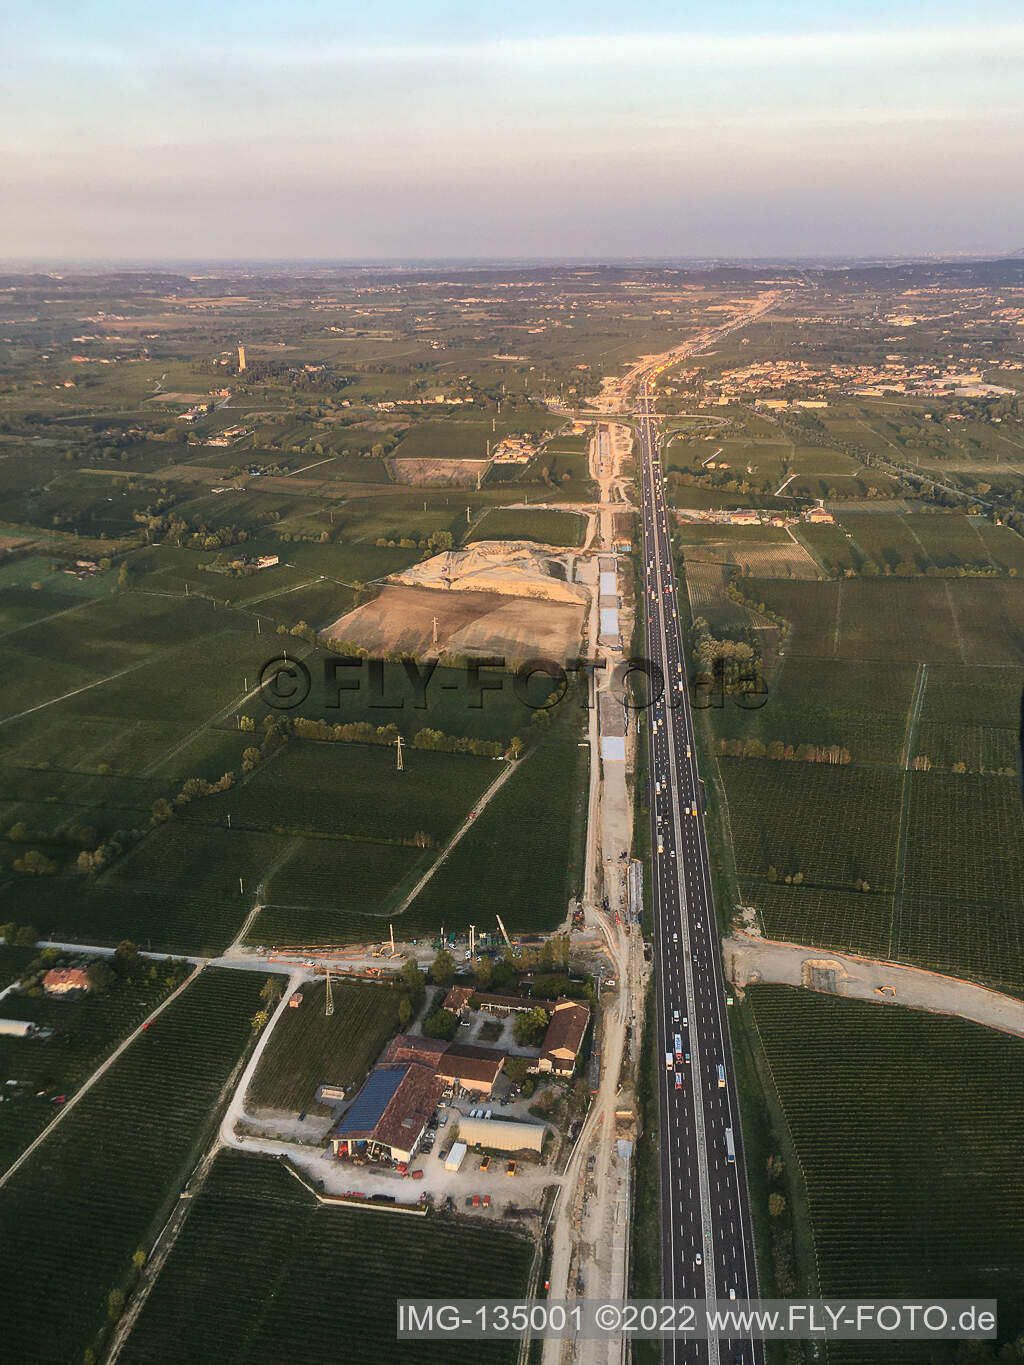 Vue aérienne de Pozzolengo dans le département Brescia, Italie